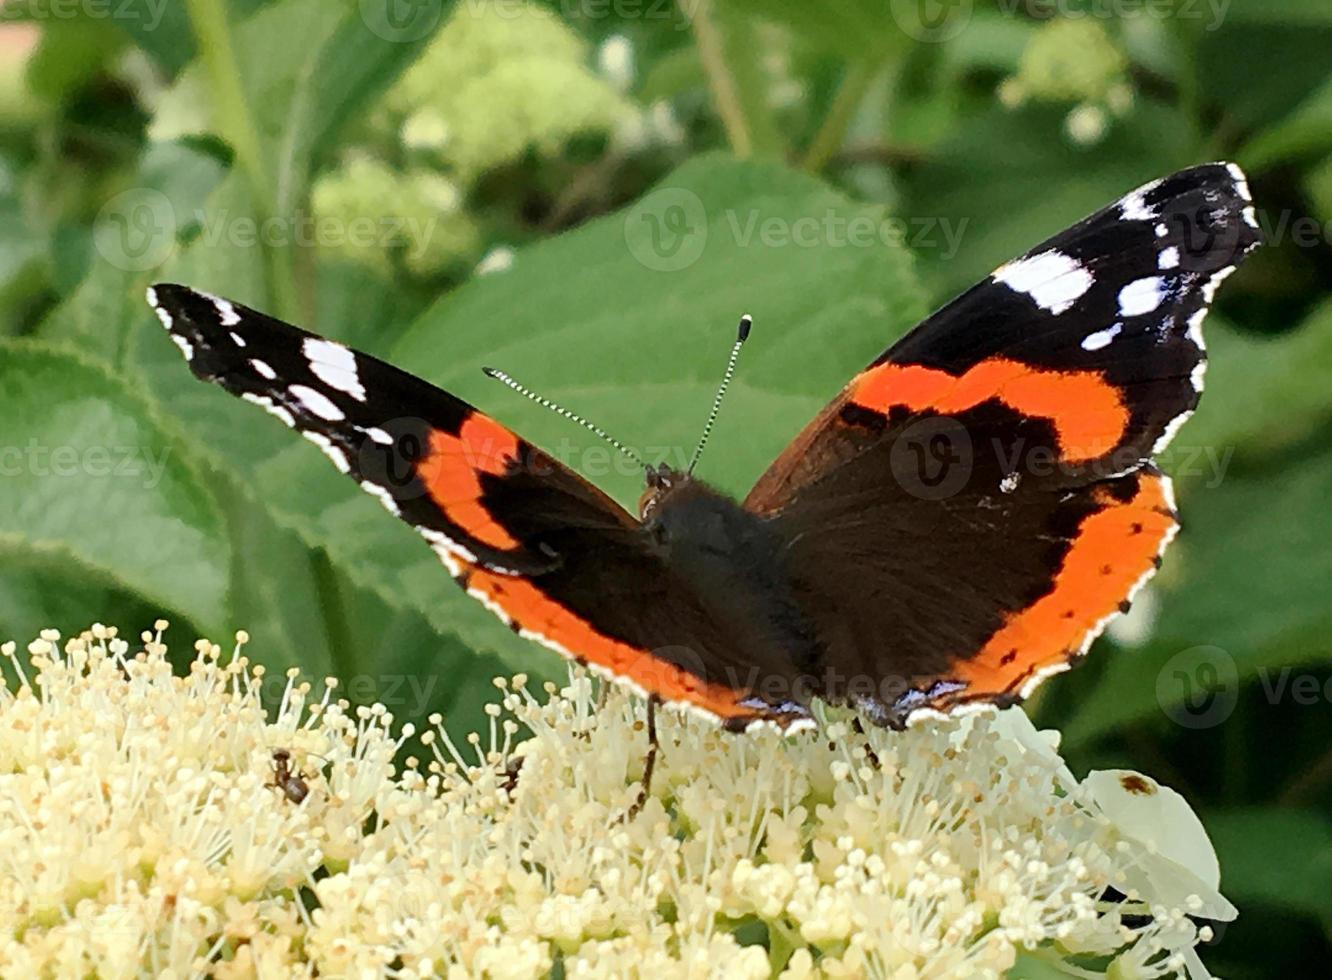 grande borboleta preta monarca andando na planta com flores foto